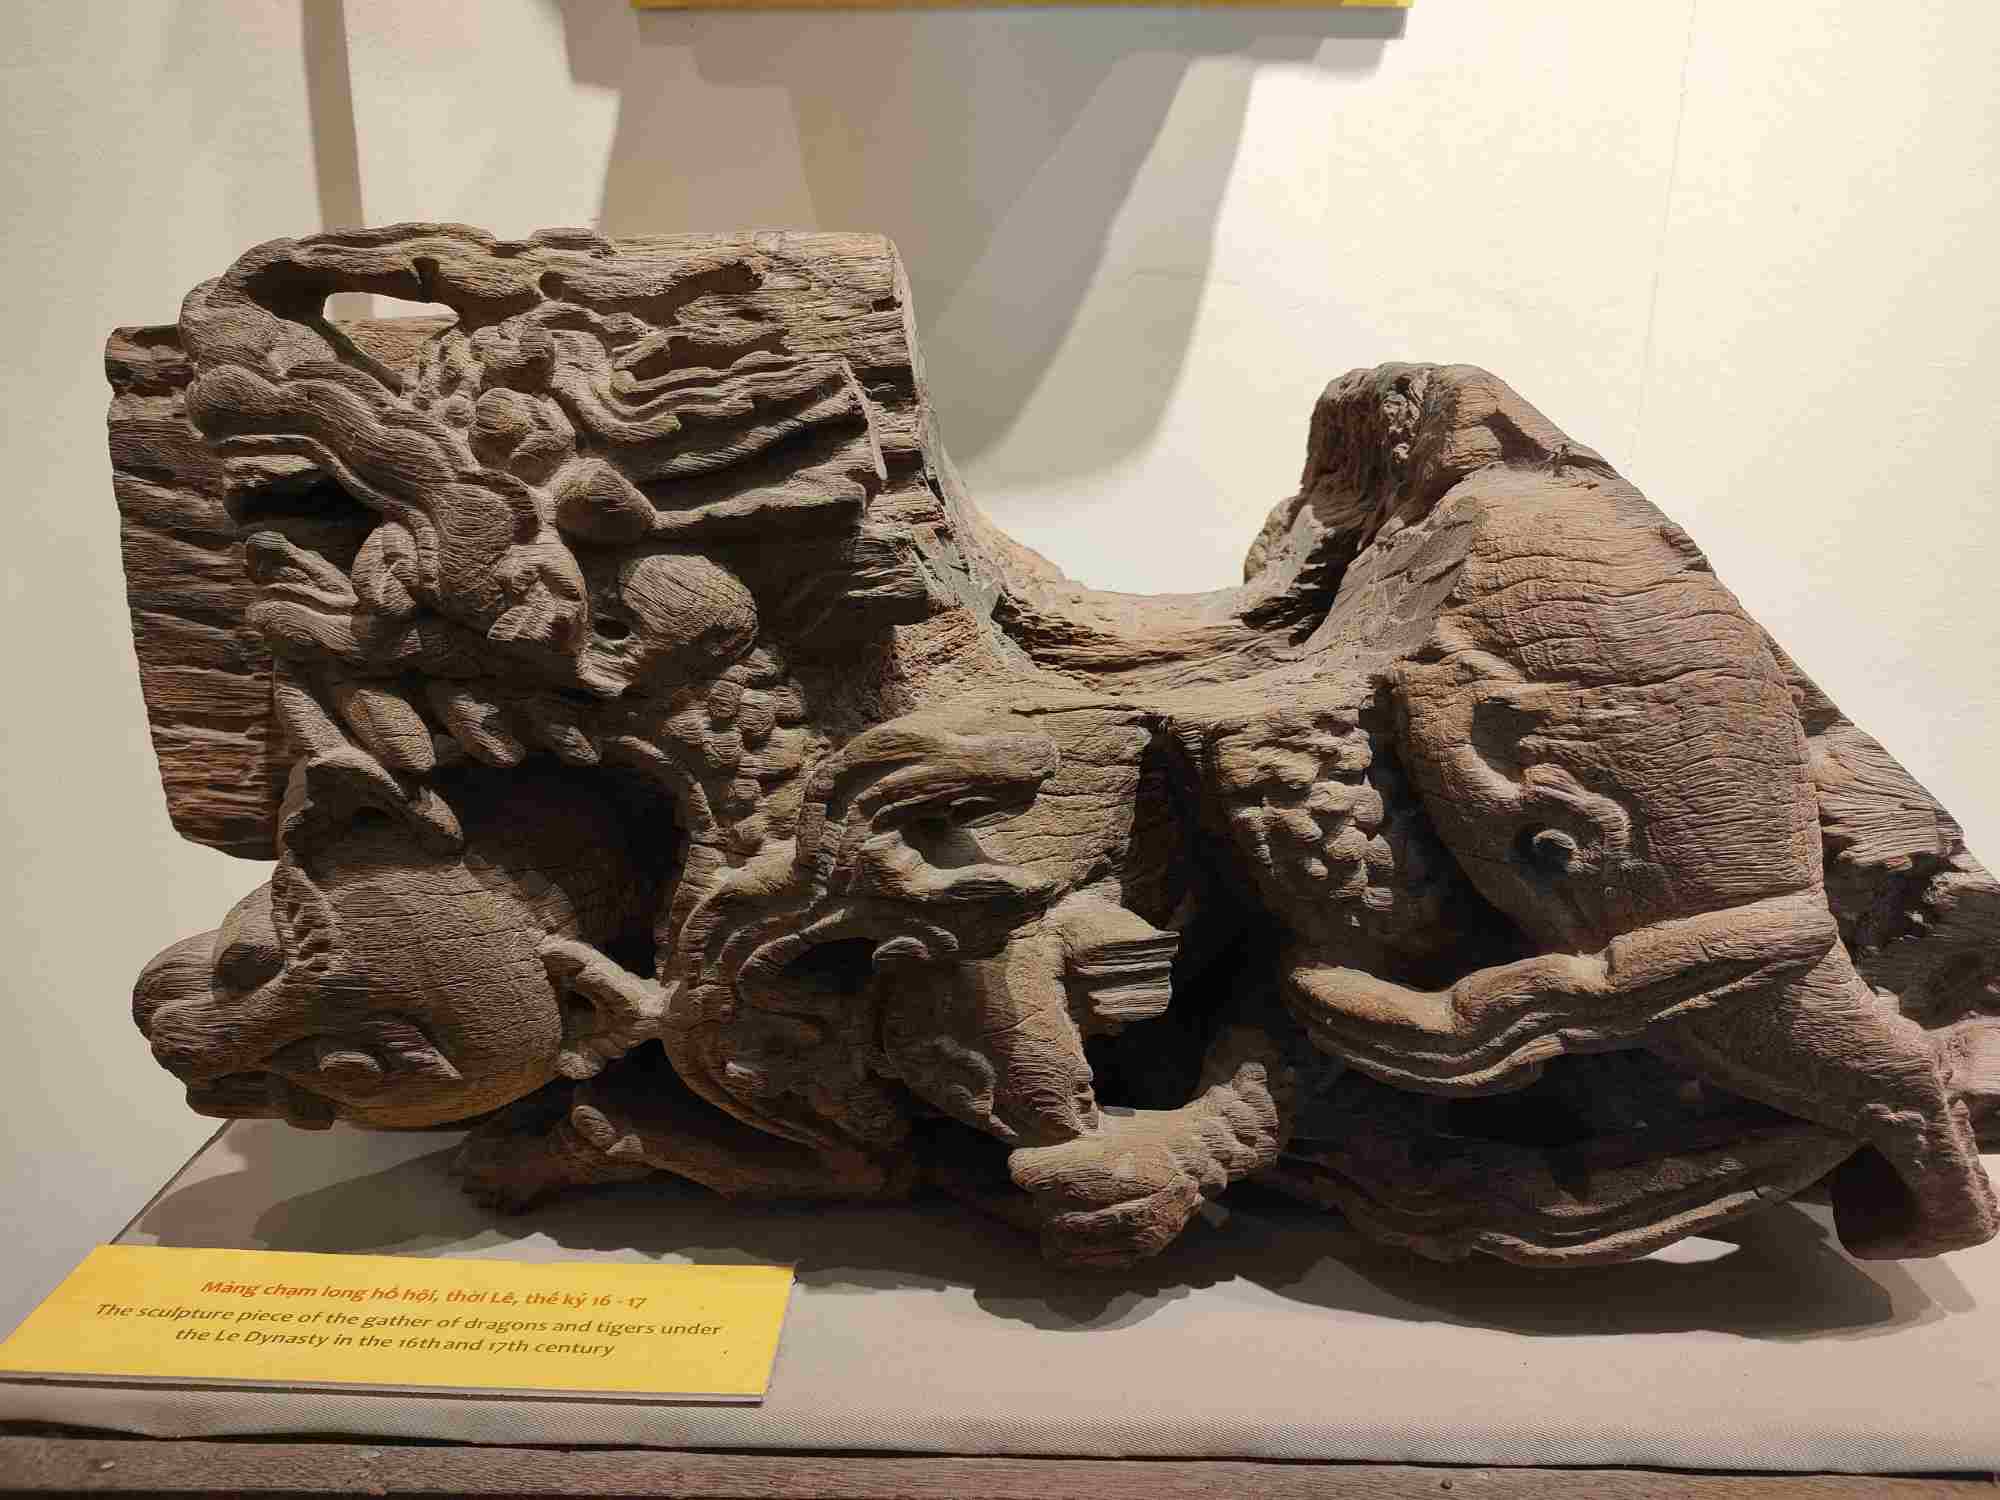 Rồng và hổ là những hình tượng linh thiêng trong văn hóa Việt Nam và một số nước châu Á. Hổ là động vật có thật và gần như là duy nhất được sánh đôi với rồng - một loài vật hư cấu tượng trưng cho quyền năng của tự nhiên. Bức chạm “Long hổ hội” có niên đại thế kỷ 17 hiện đang được trưng bày tại Bảo tàng Hải Phòng. Bức chạm thể hiện mong muốn đỗ đạt cao bởi Rồng tượng trưng cho Tiến sĩ, hổ tượng trưng cho cử nhân. Long hổ sum vầy tức là mong muốn con cháu sẽ đỗ đạt cao